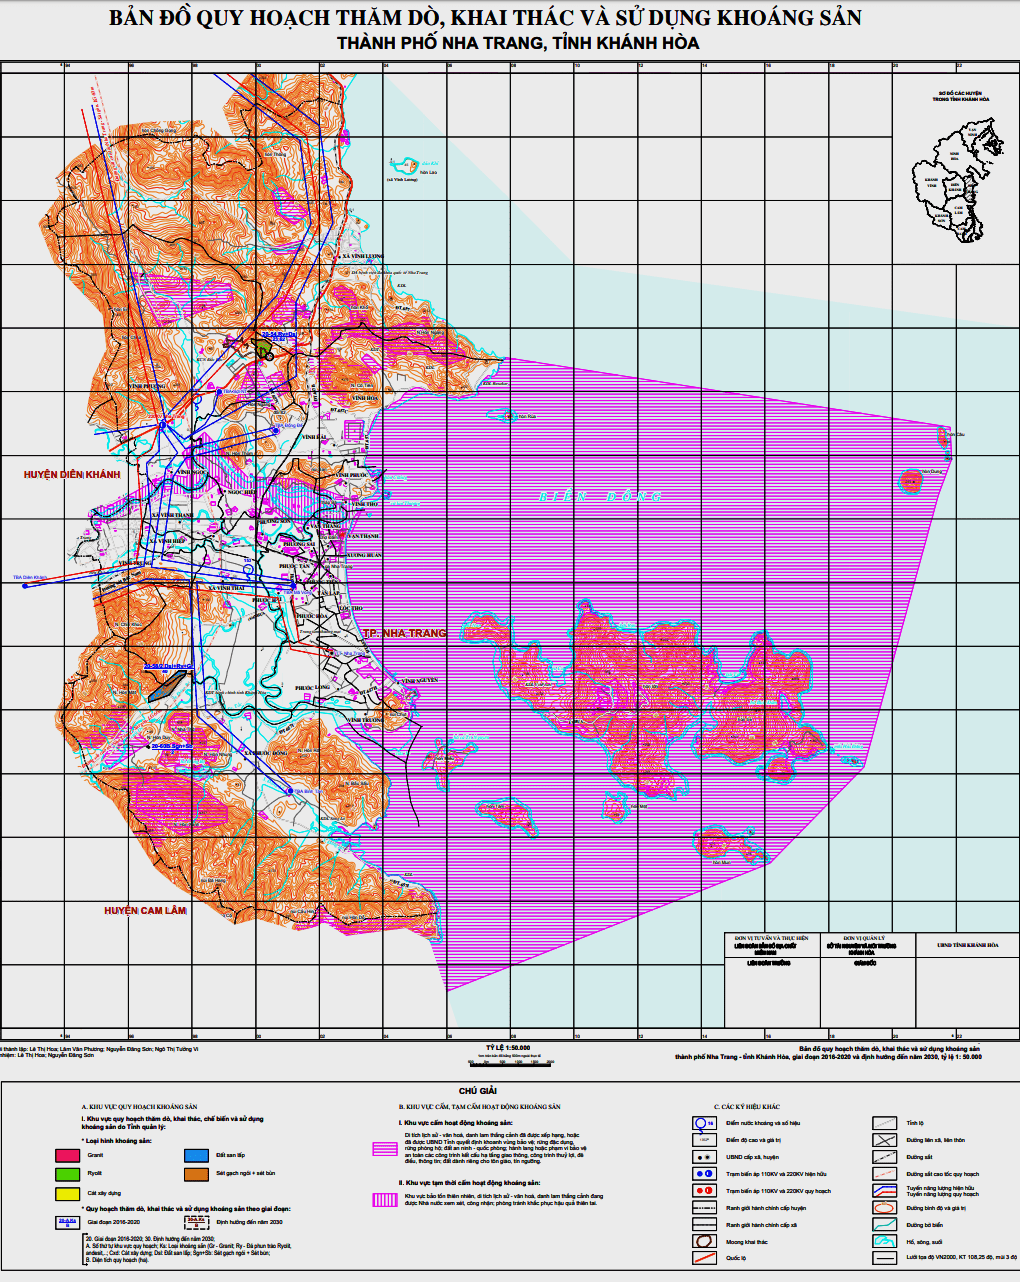 Bản đồ quy hoạch Khánh Hòa 2018 đến năm 2030 về khai thác và sử dụng khoáng sản thành phố Nha Trang